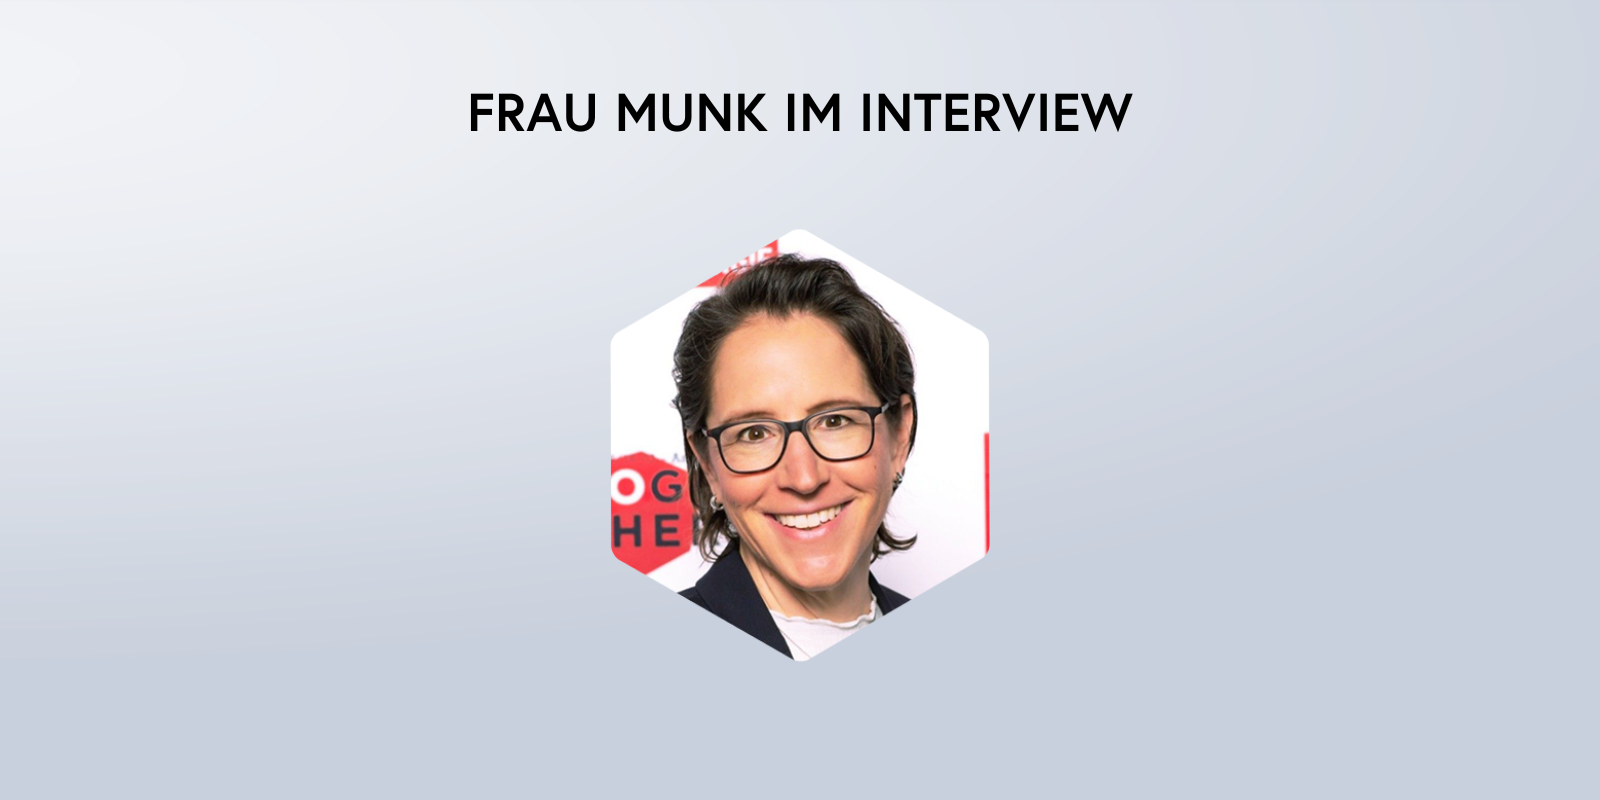 headergrafik_interview_munk